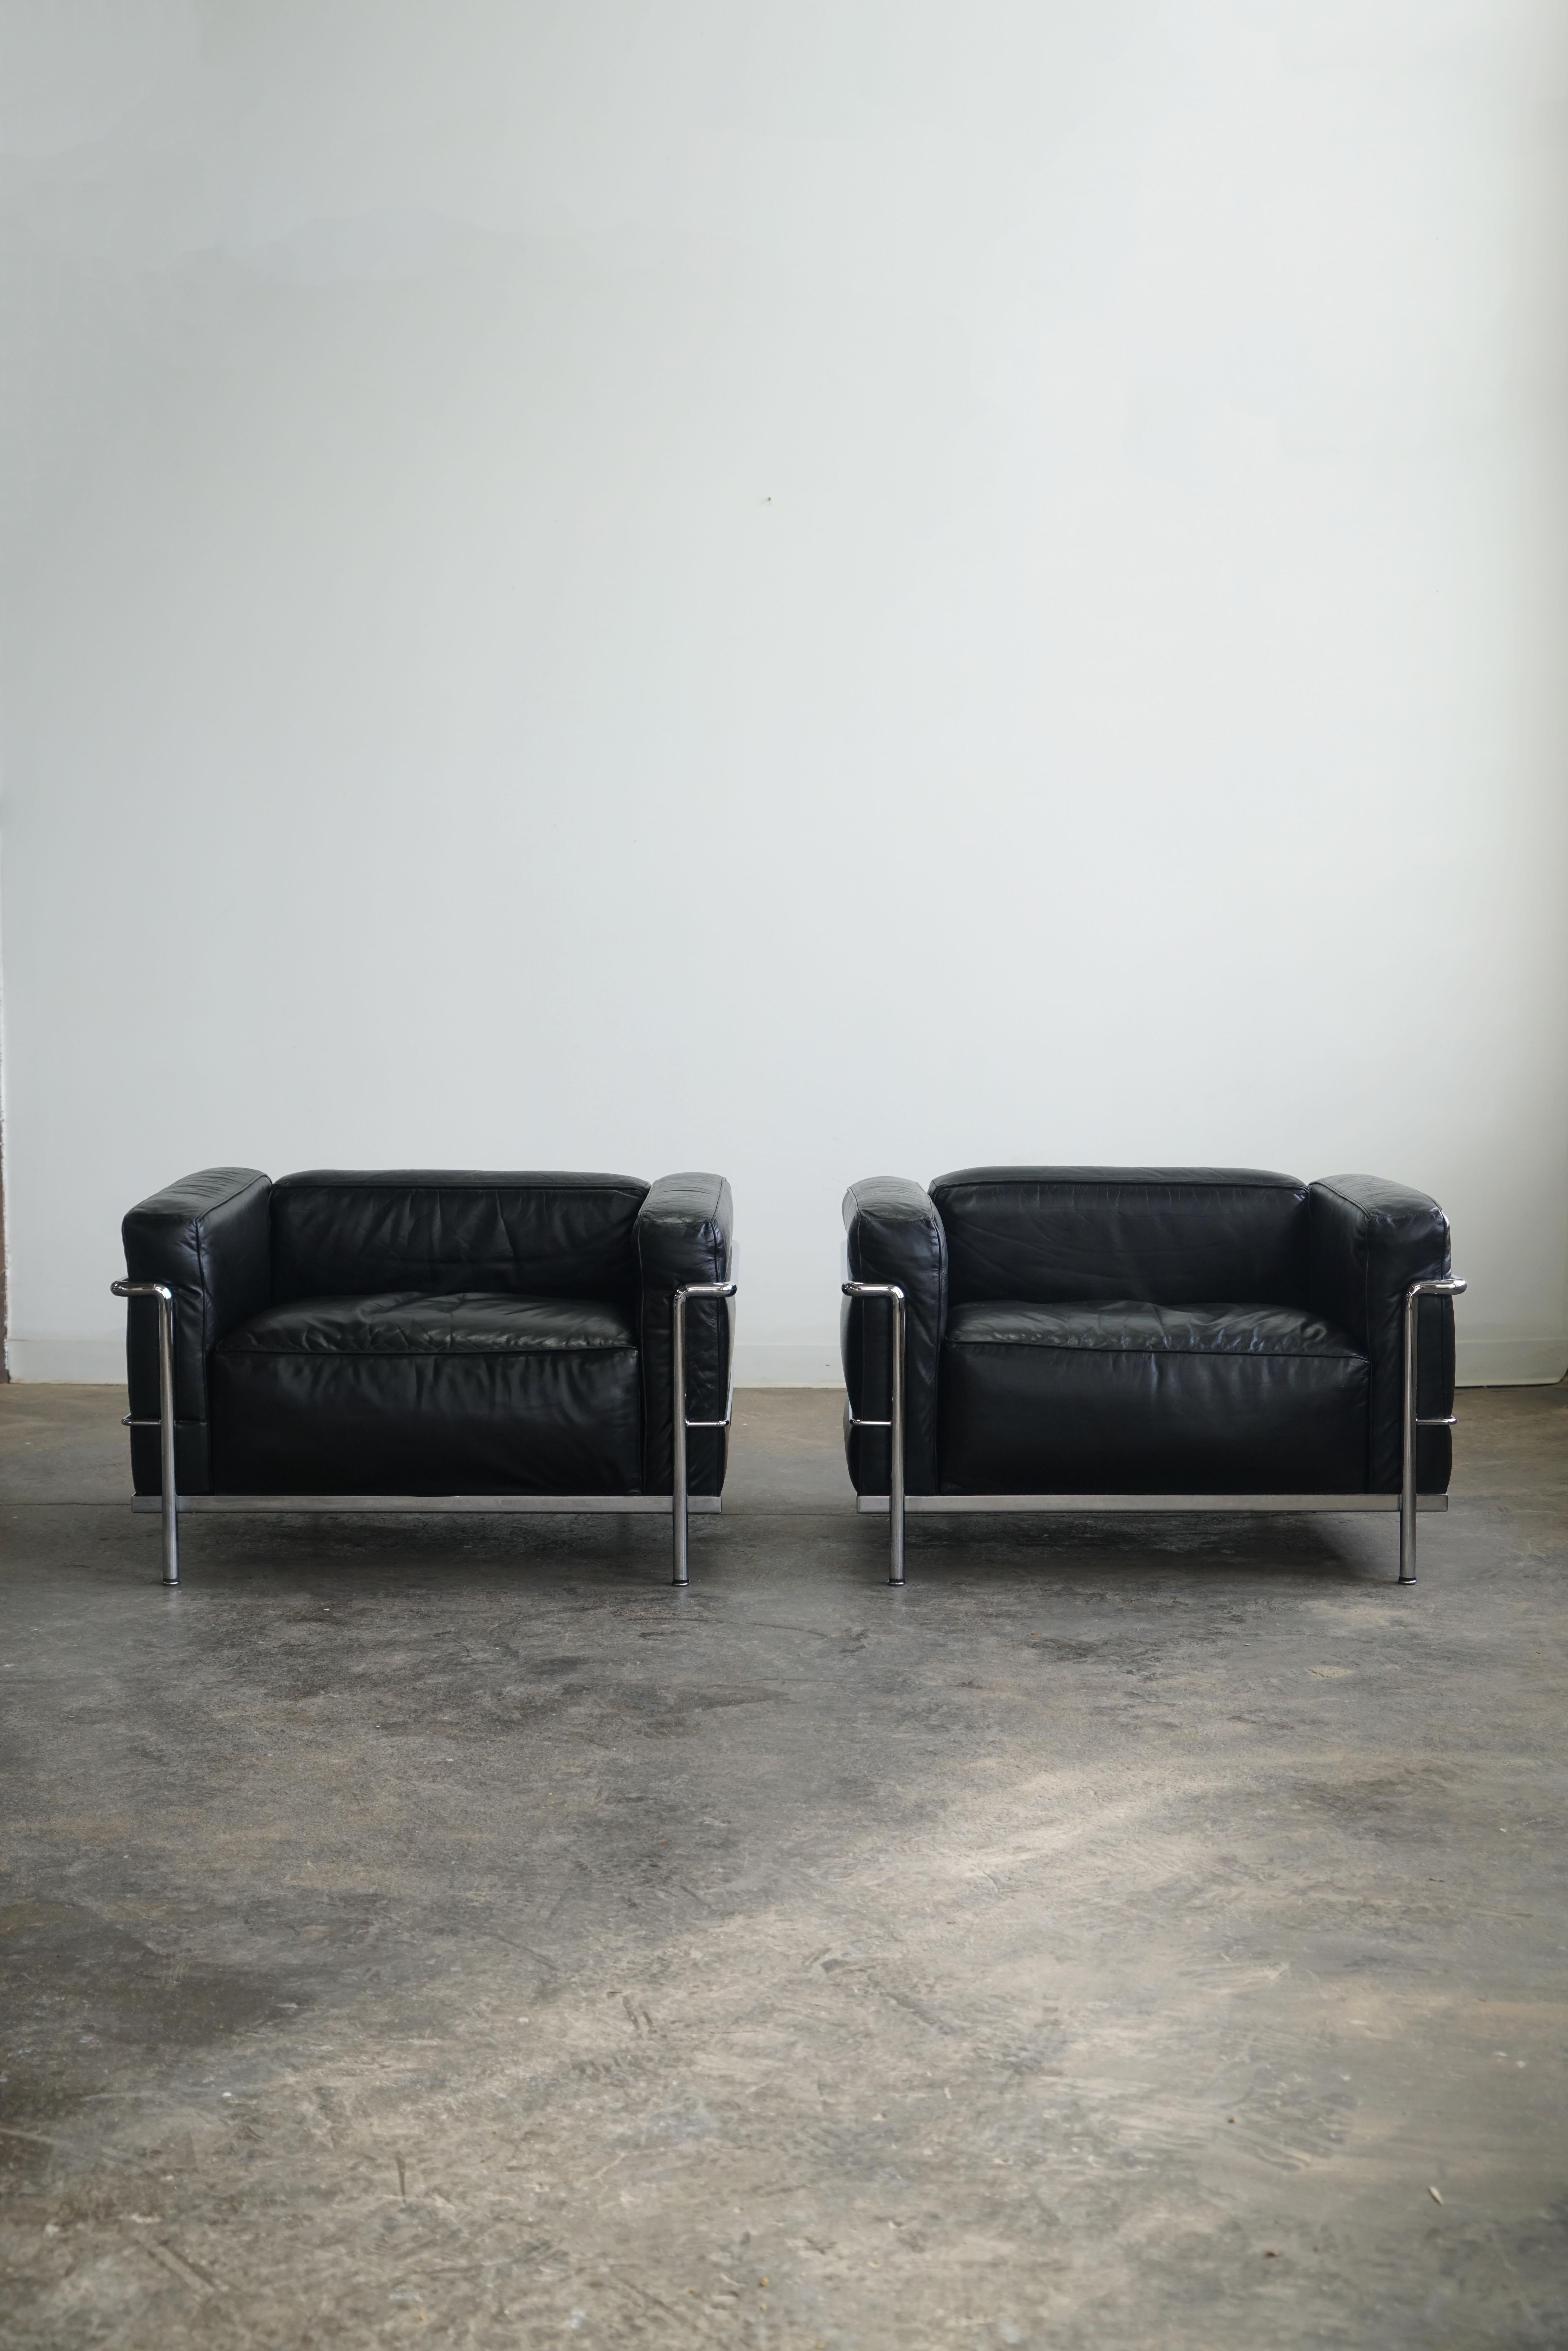 Ein Paar LC3 Grand Modele Sessel für Cassina.
Schwarzes Leder und verchromter Stahl.

Der LC3, einer der berühmtesten Stühle, wurde 1928 von Le Corbusier, Pierre Jeanneret und Charlotte Perriand entworfen. Der Stuhl ist ein wahres Symbol für